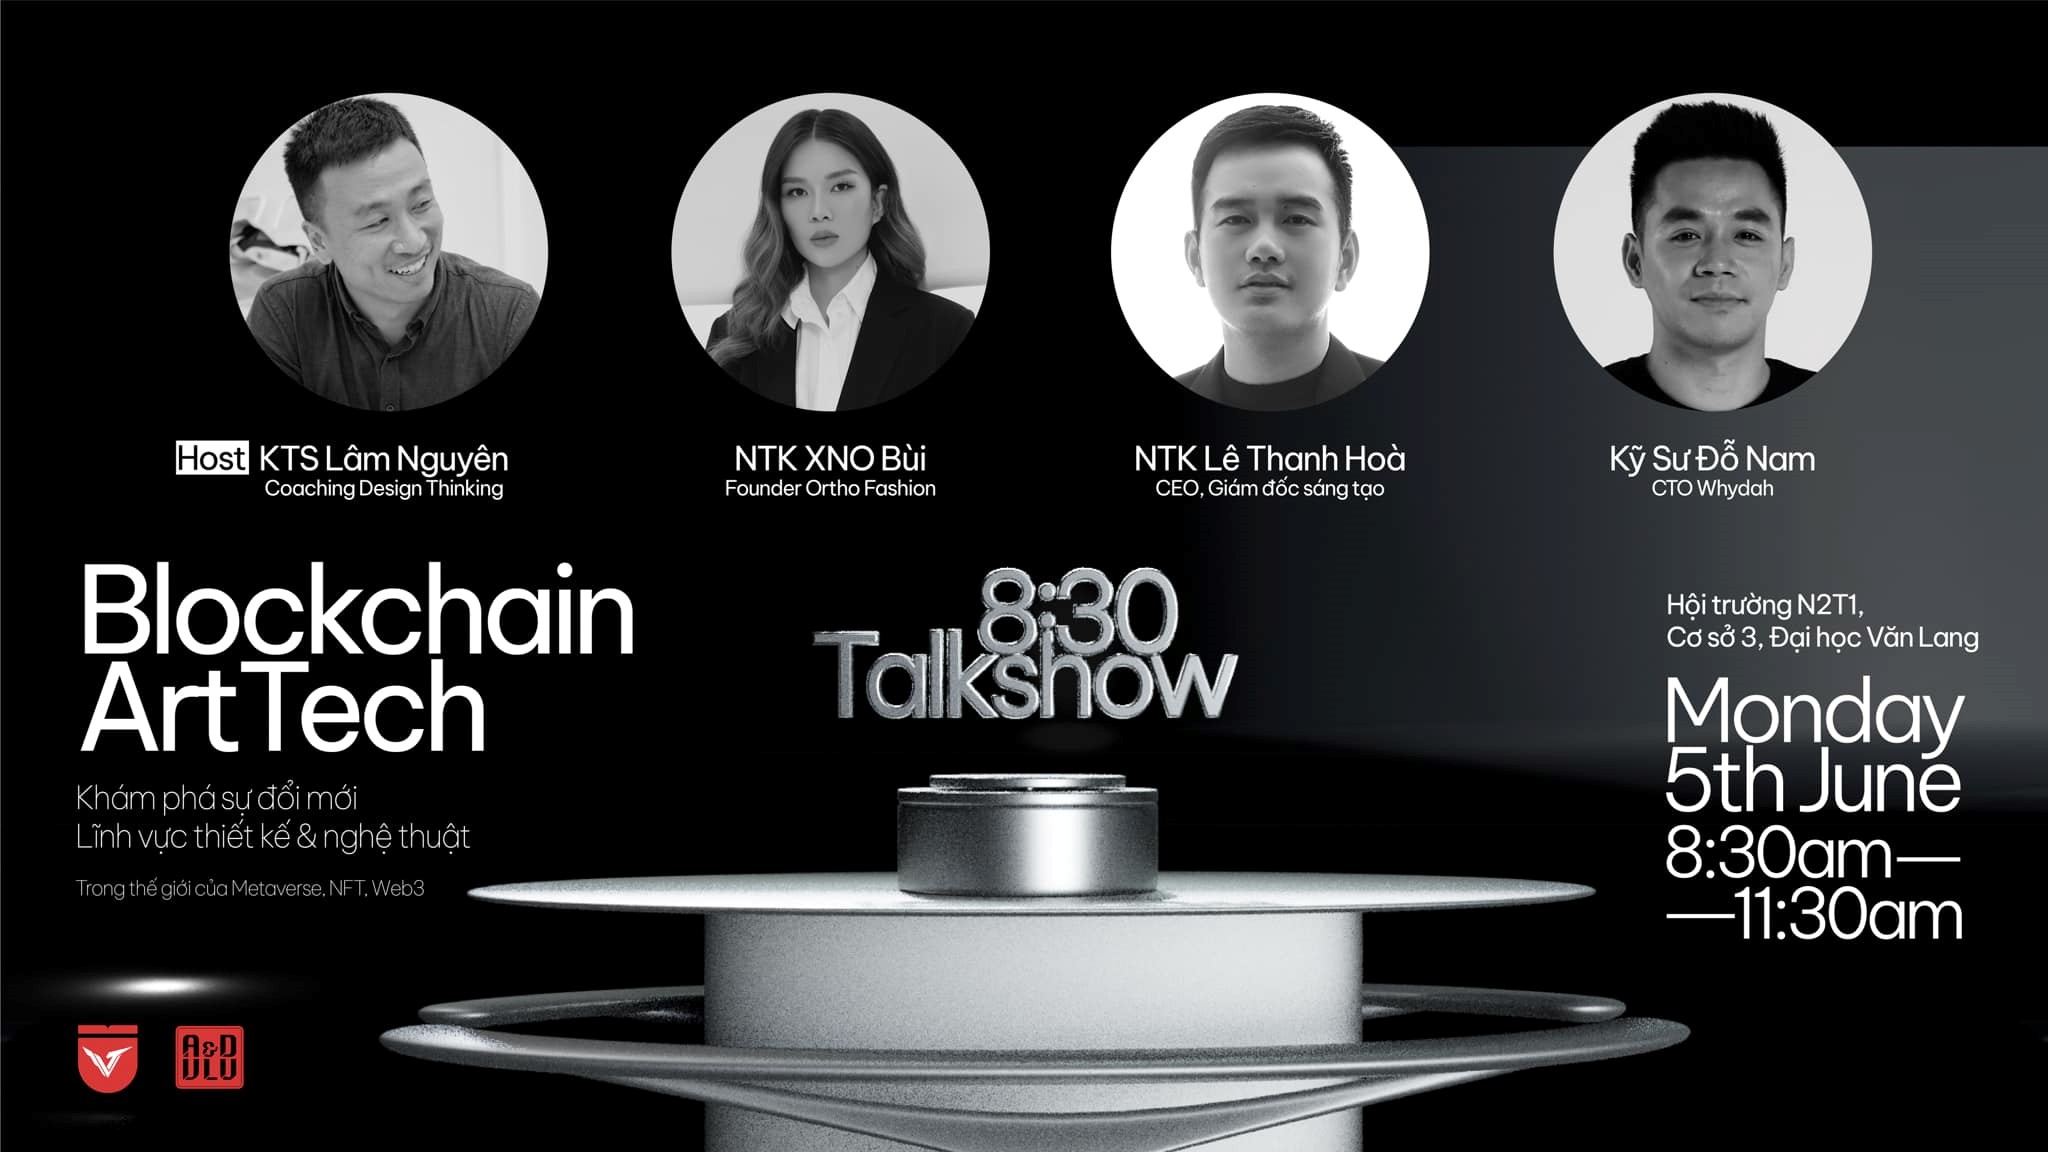 Talkshow 8:30 "Blockchain ArtTech"